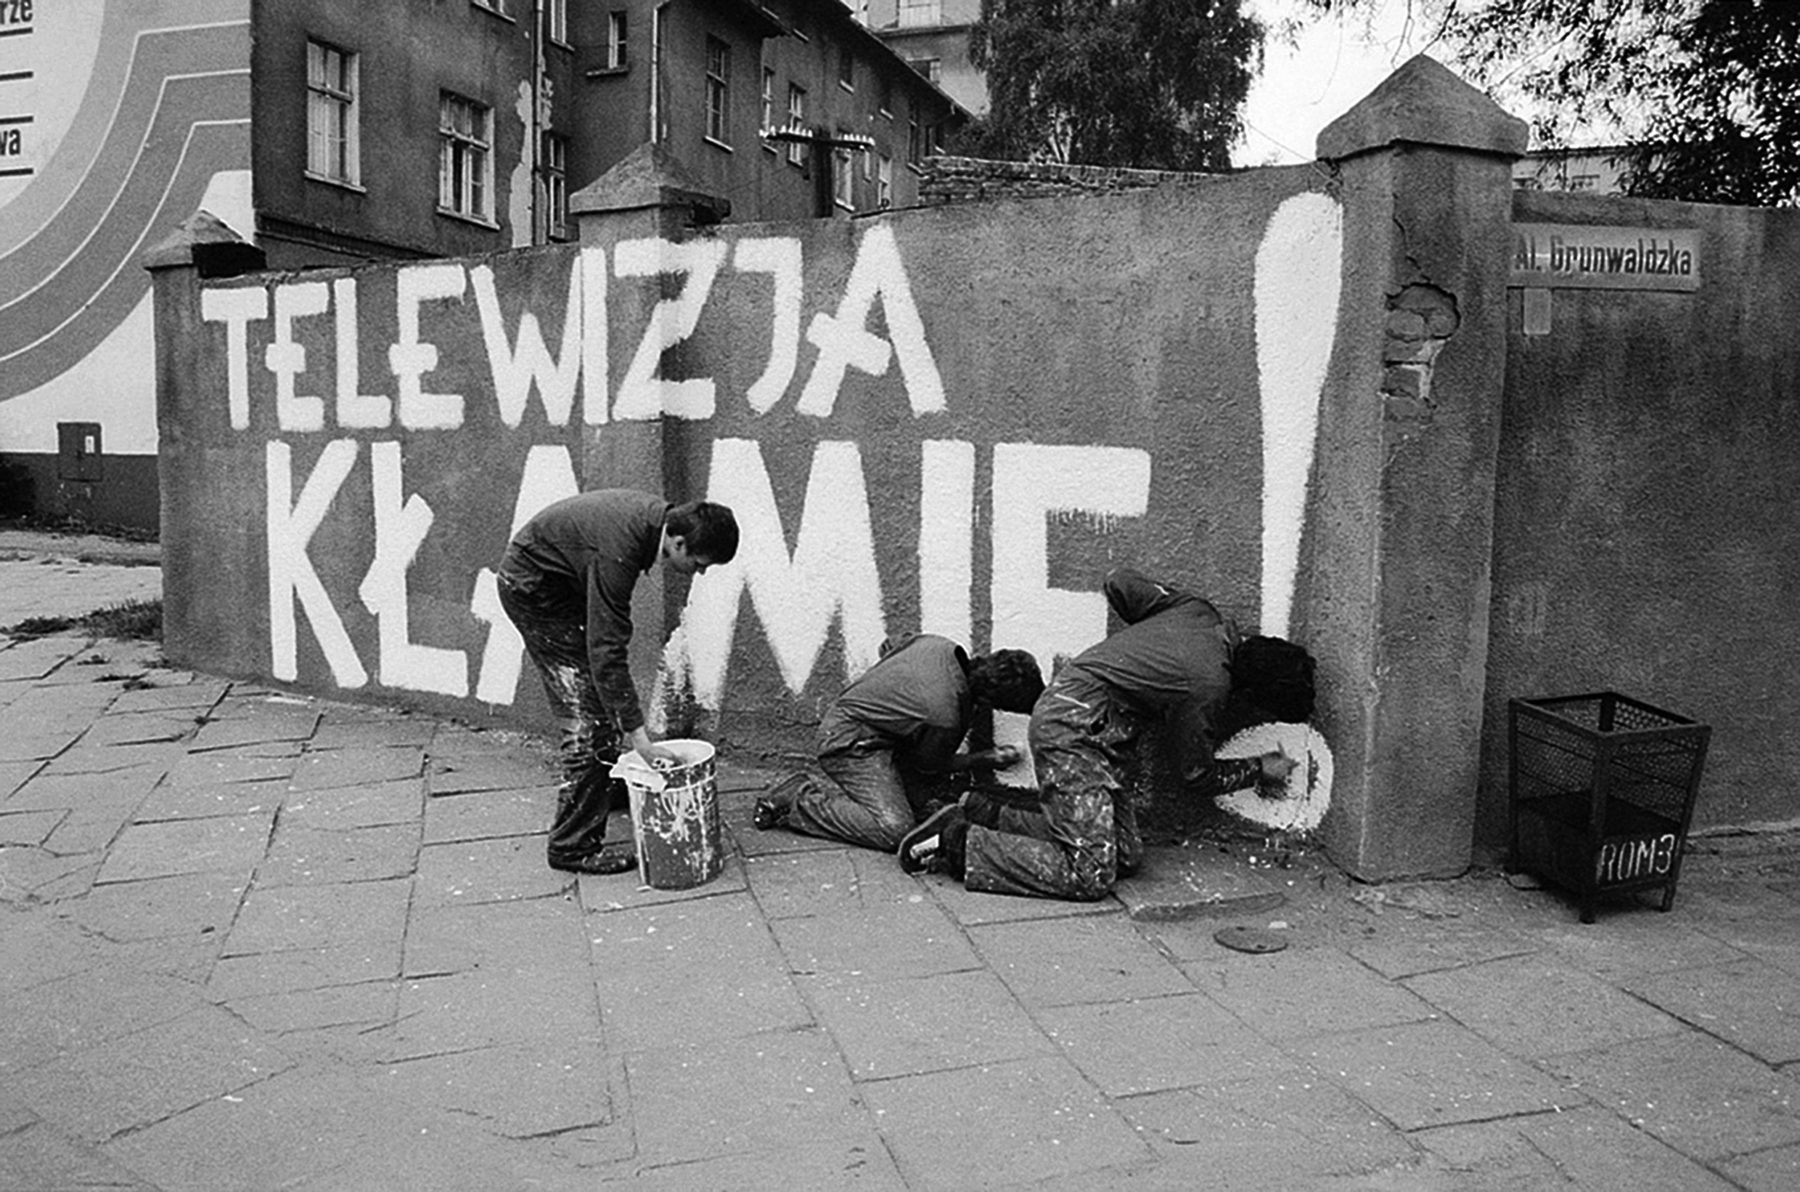 ” Telewizja klamie ” hasla na murach Gdanska